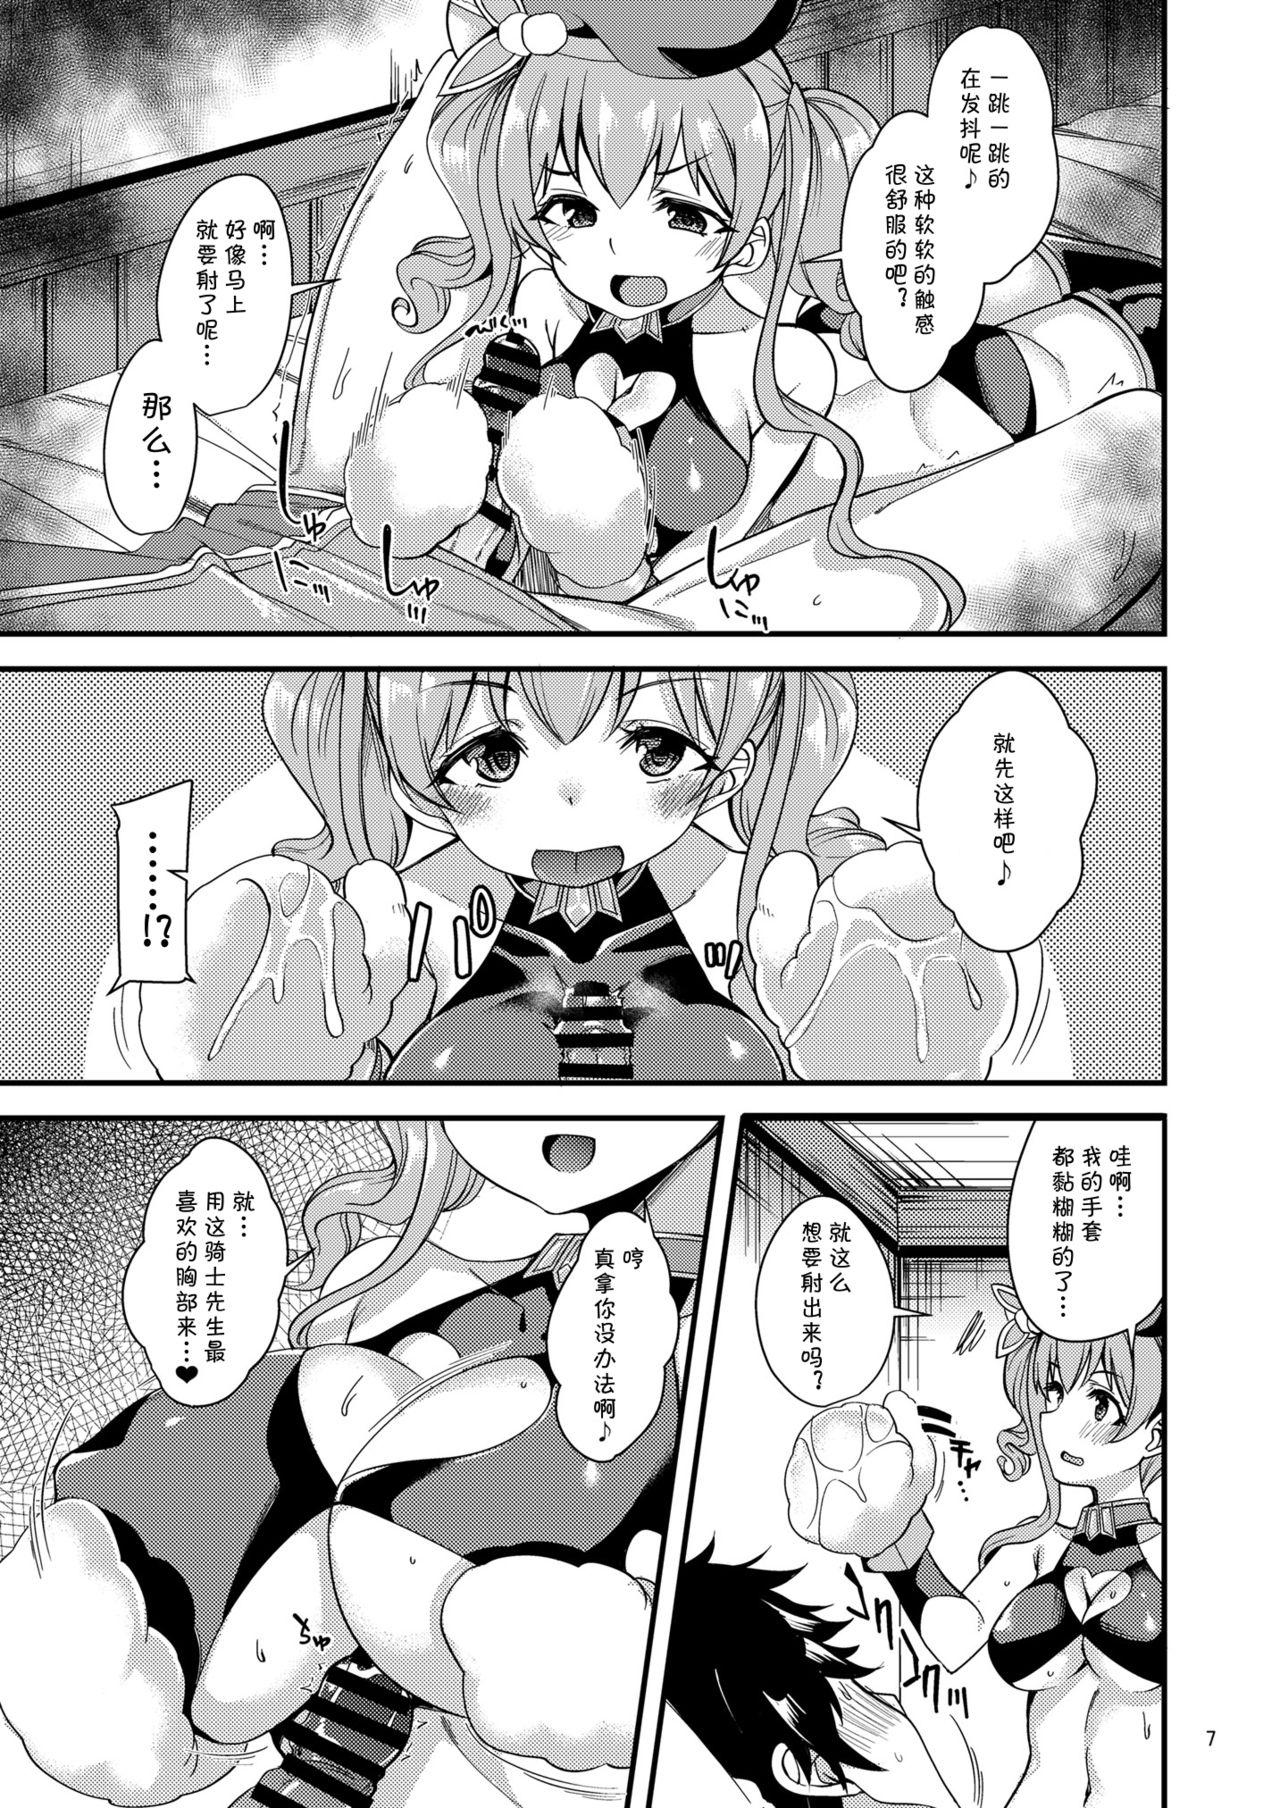 Gayporn Tsumugi Make Heroine Move!! 04 - Princess connect Gets - Page 8